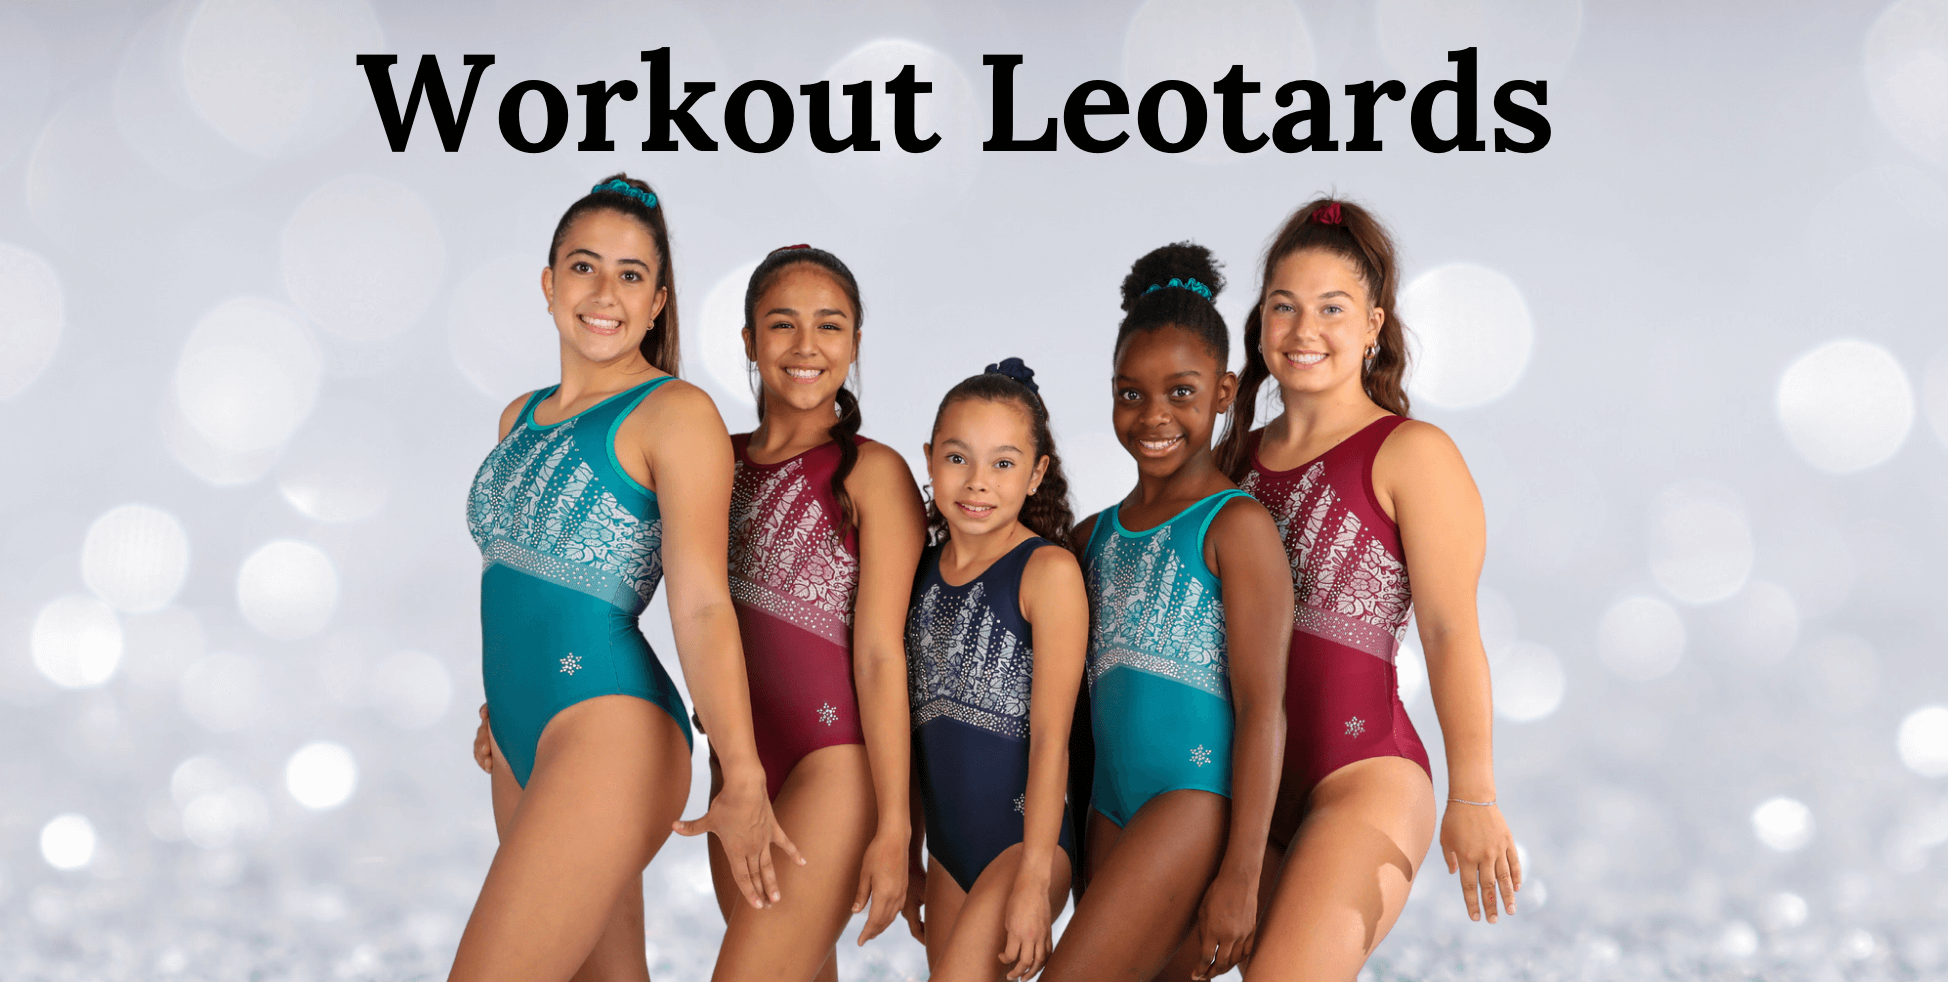 Gymnastics Workout Leotards by Snowflake Designs Leotards